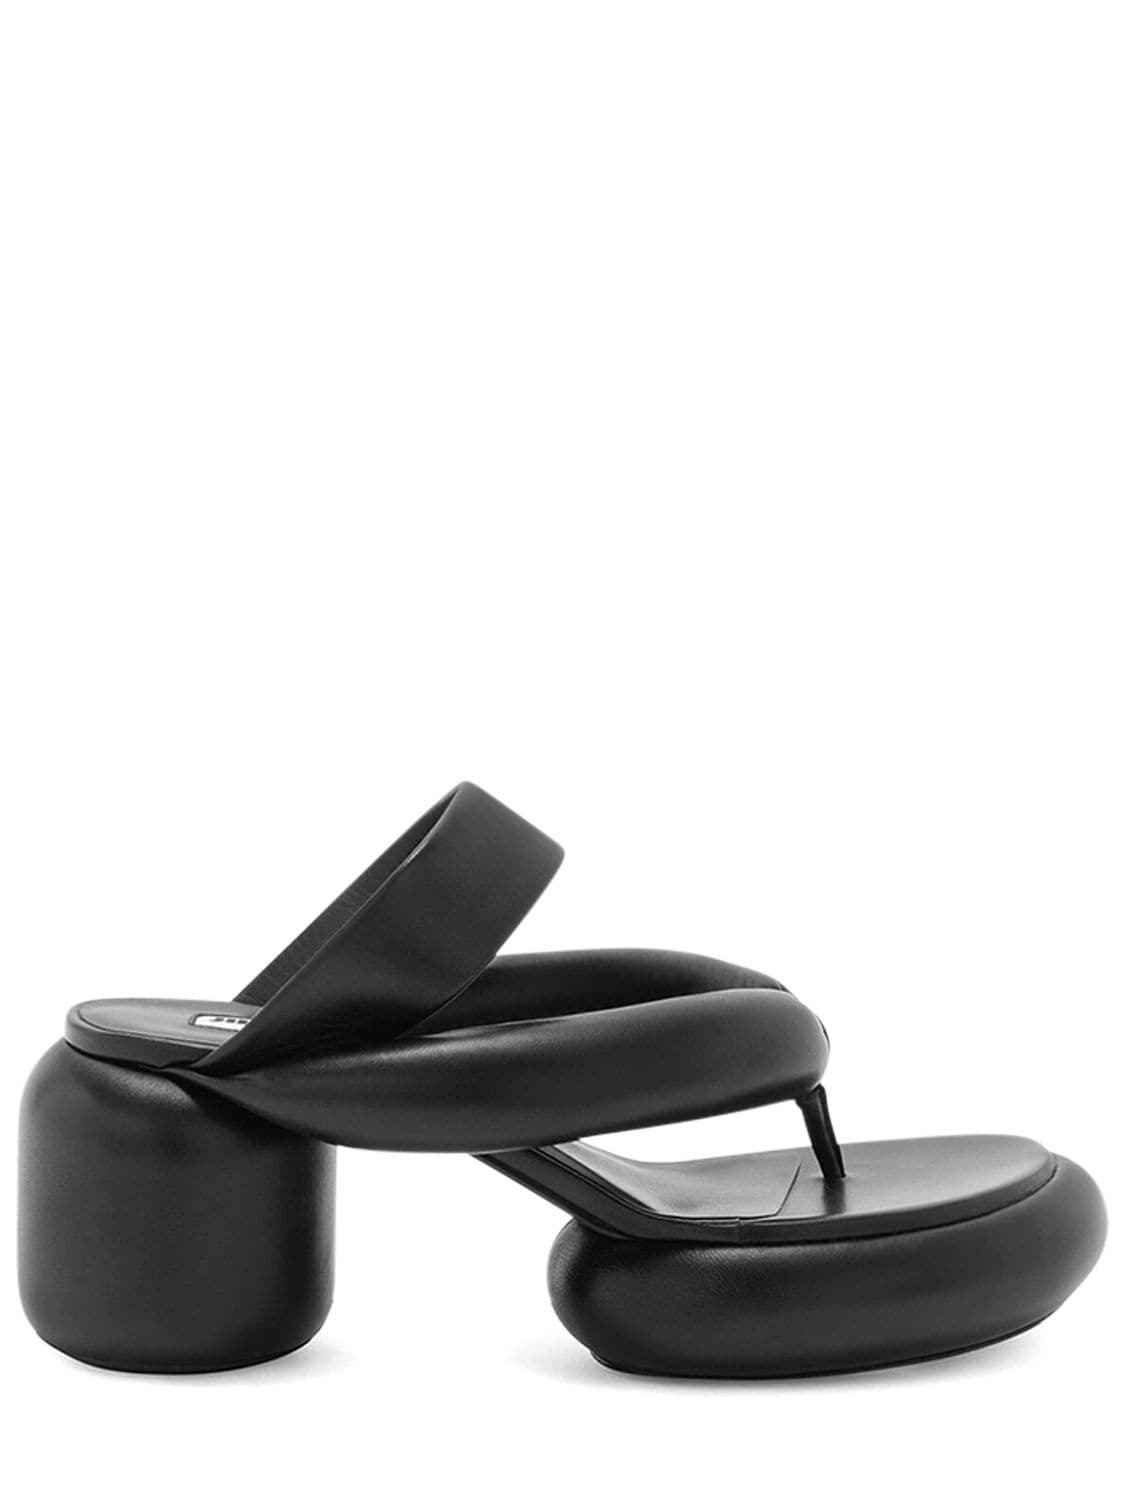 JIL SANDER 75mm Padded Leather Platform Sandals in black